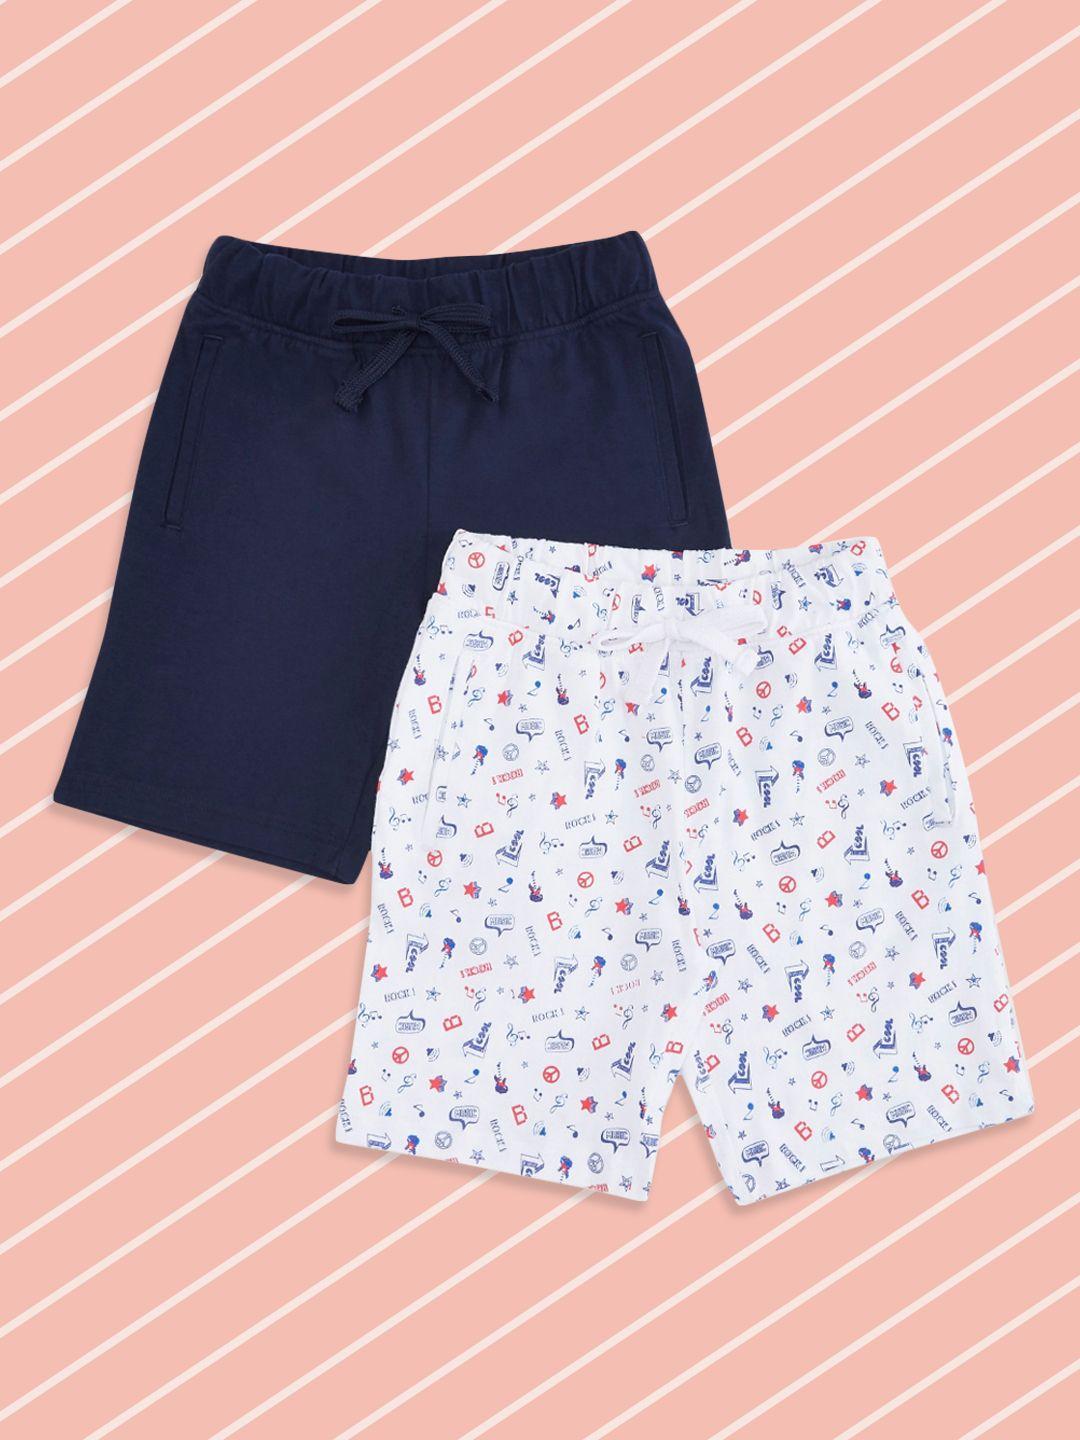 pantaloons junior boys pack of 2 floral printed shorts